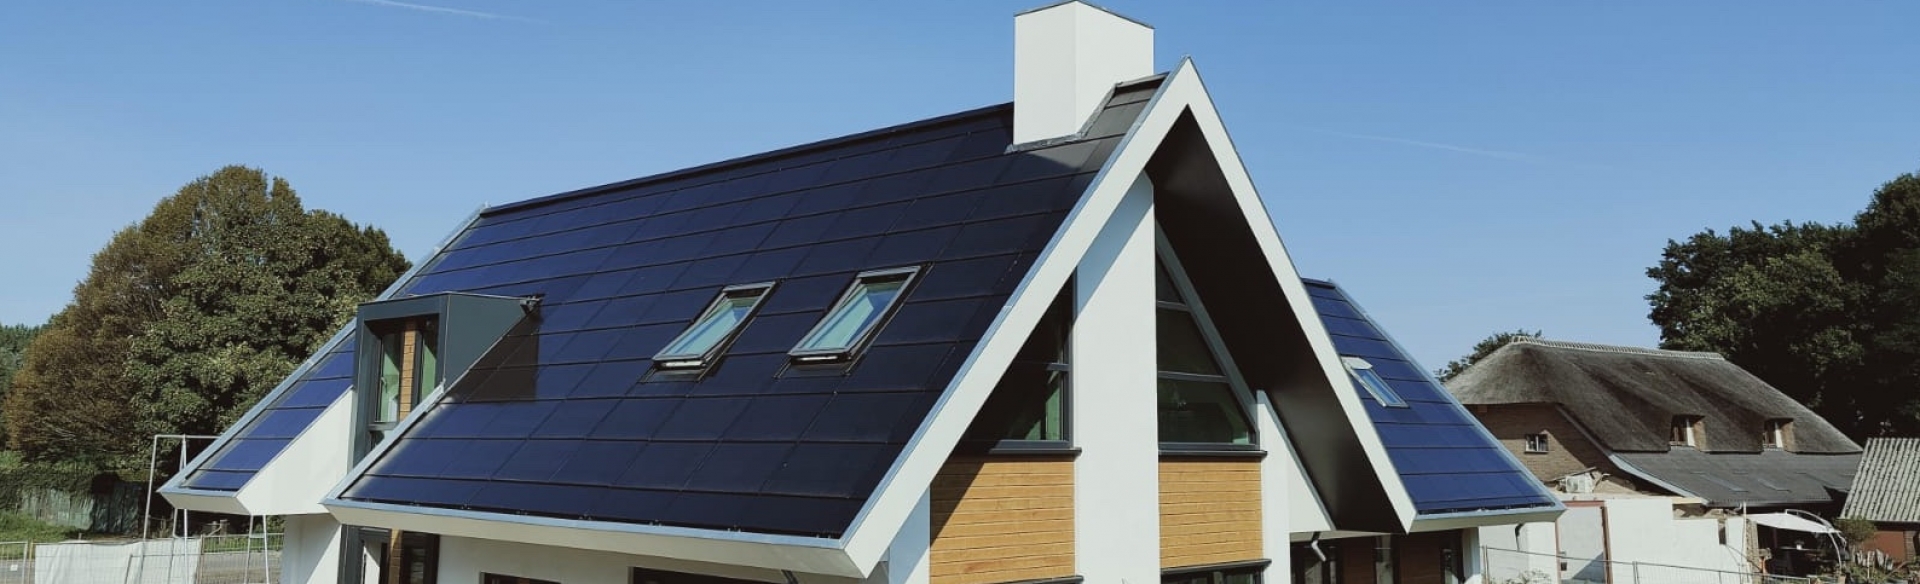 Maak een naam lekkage Wet en regelgeving Zonnepanelen dak met Loci, volledig geintegreerde zonnepanelen